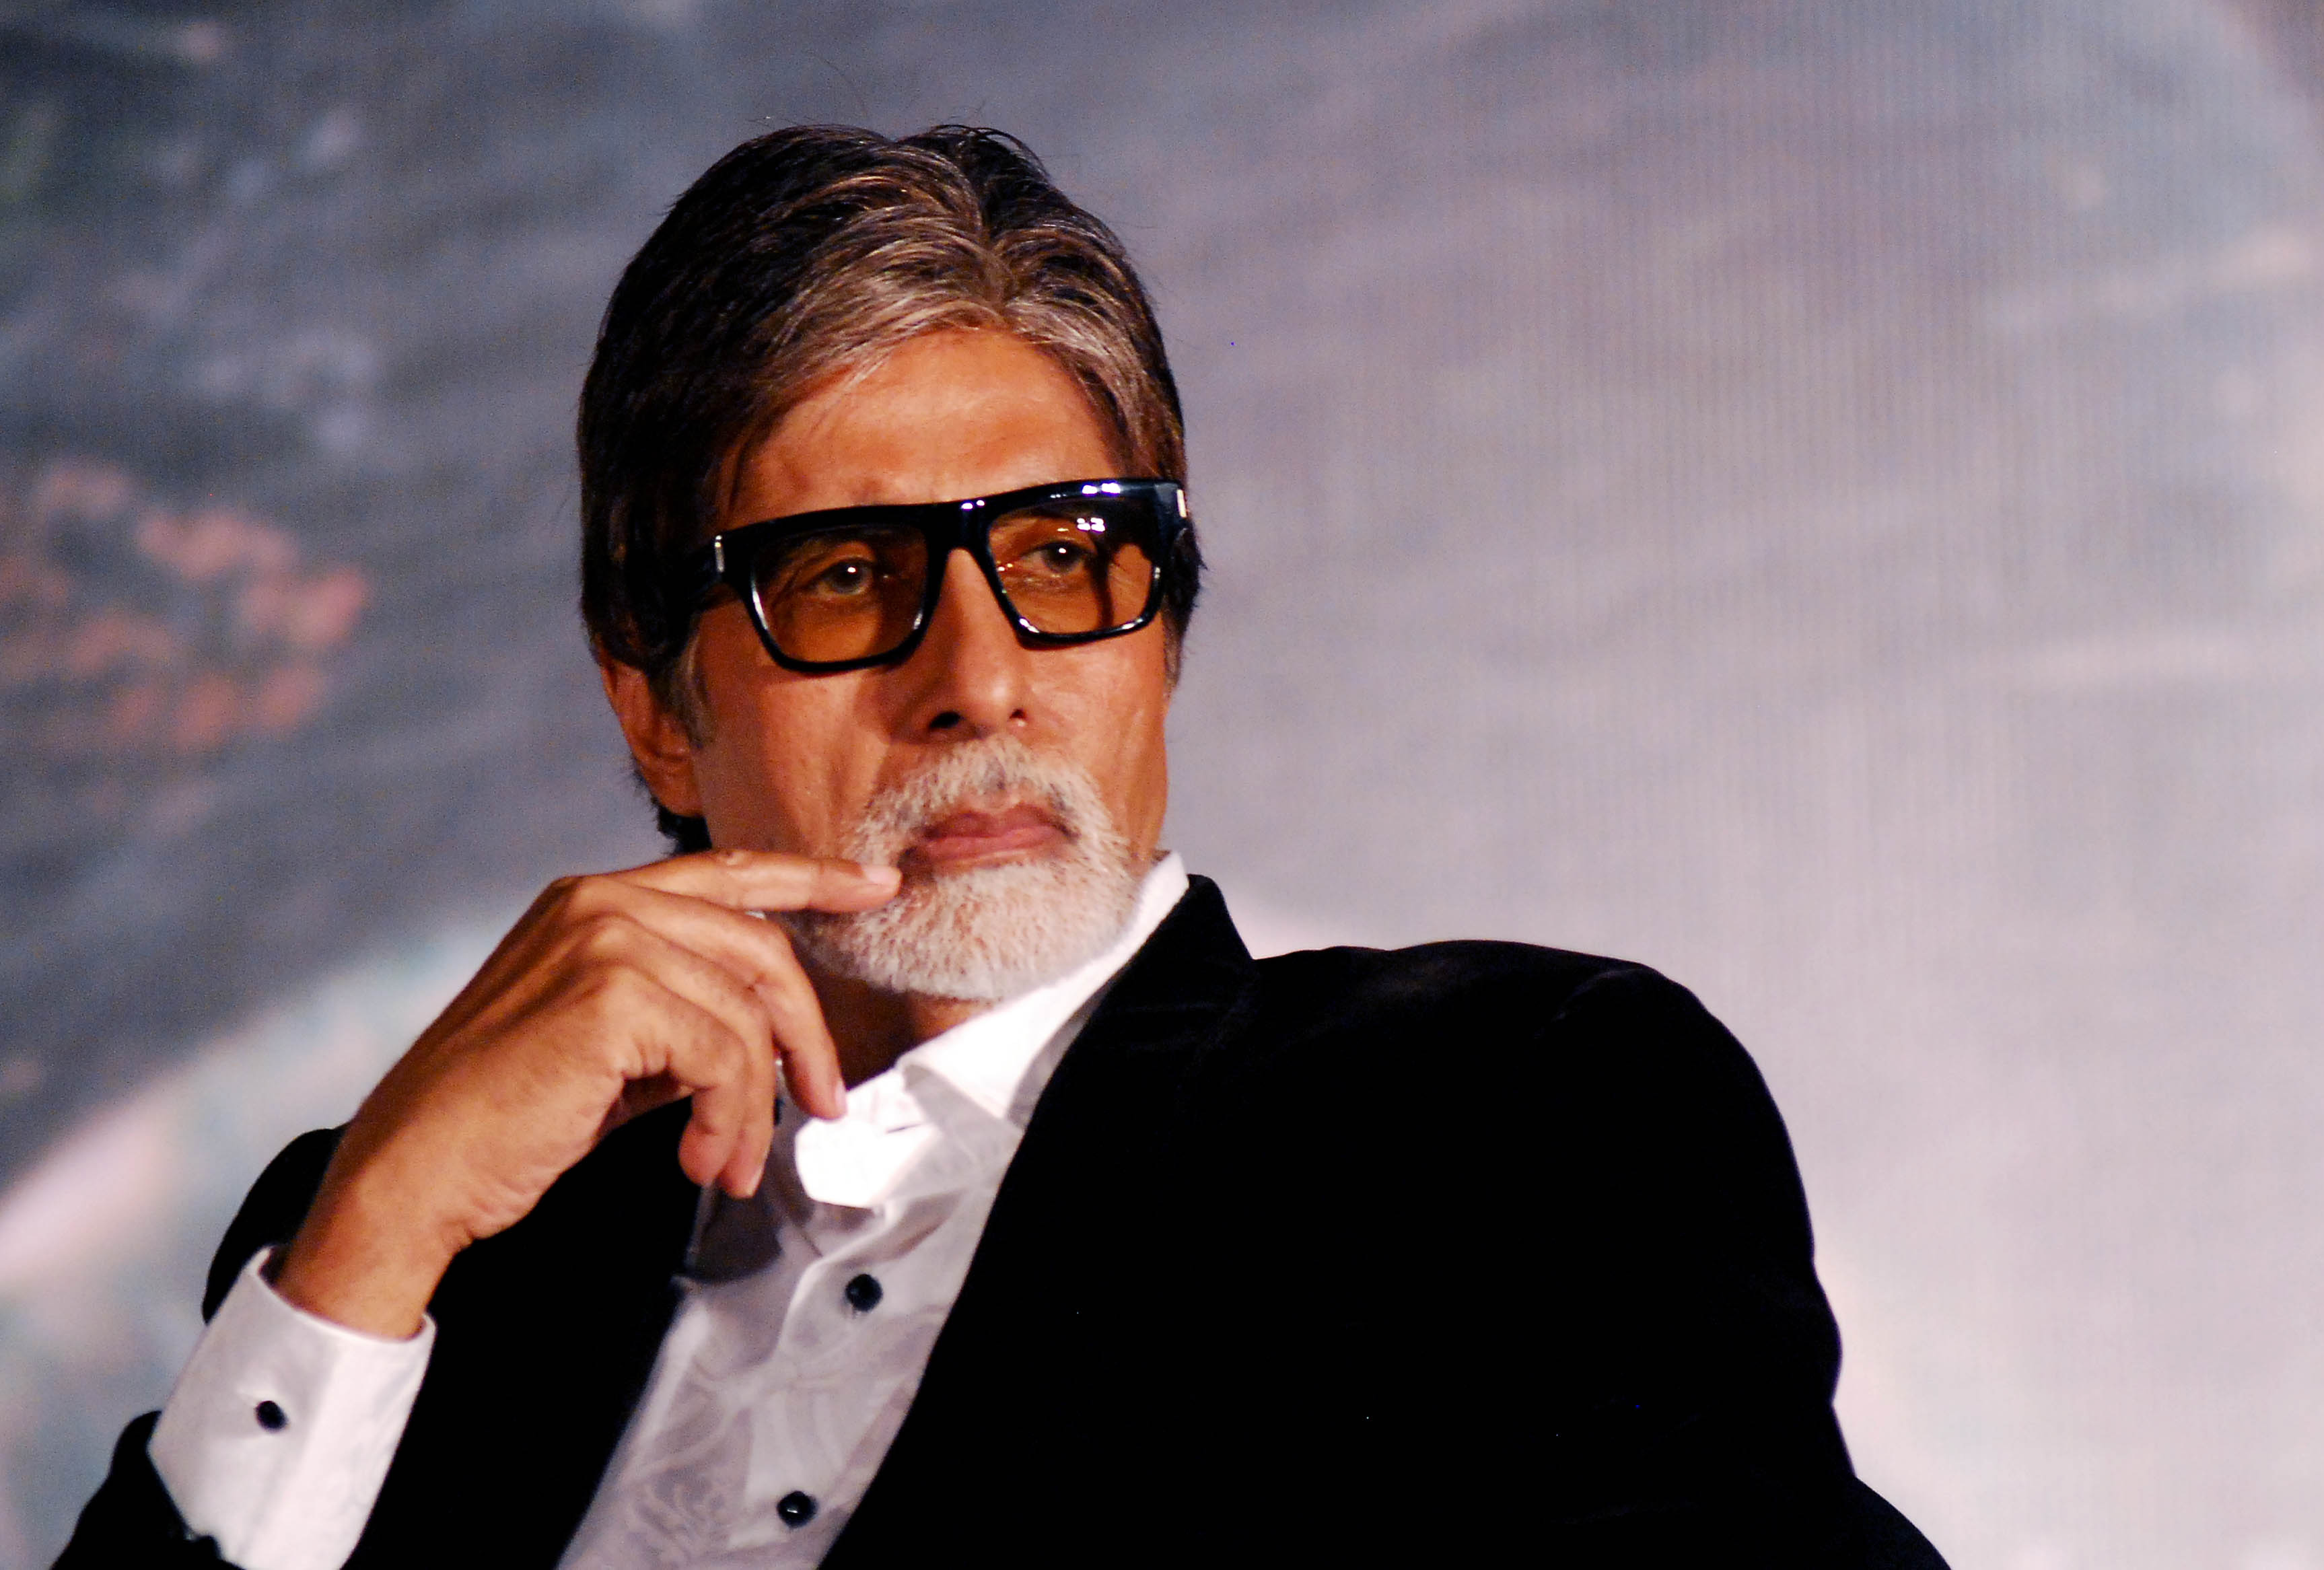 Hepatitis' B came to me accidentally, says Amitabh Bachchan